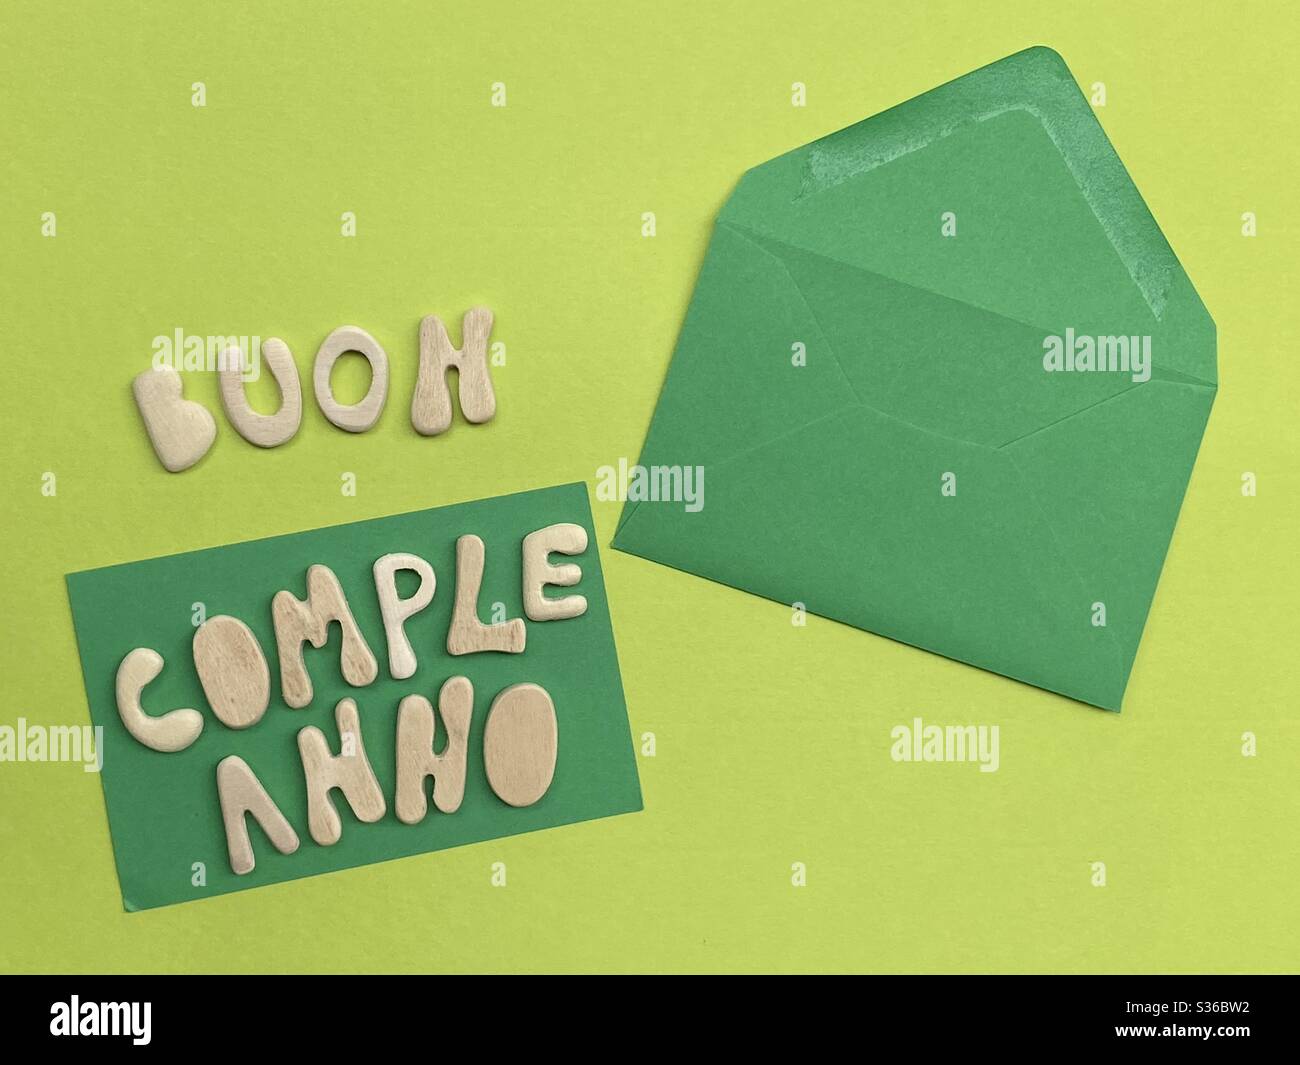 Buon Compleanno, italienischer Text für Happy Birthday, bestehend aus handgefertigten Holzbuchstaben über grüner Farbe Stockfoto